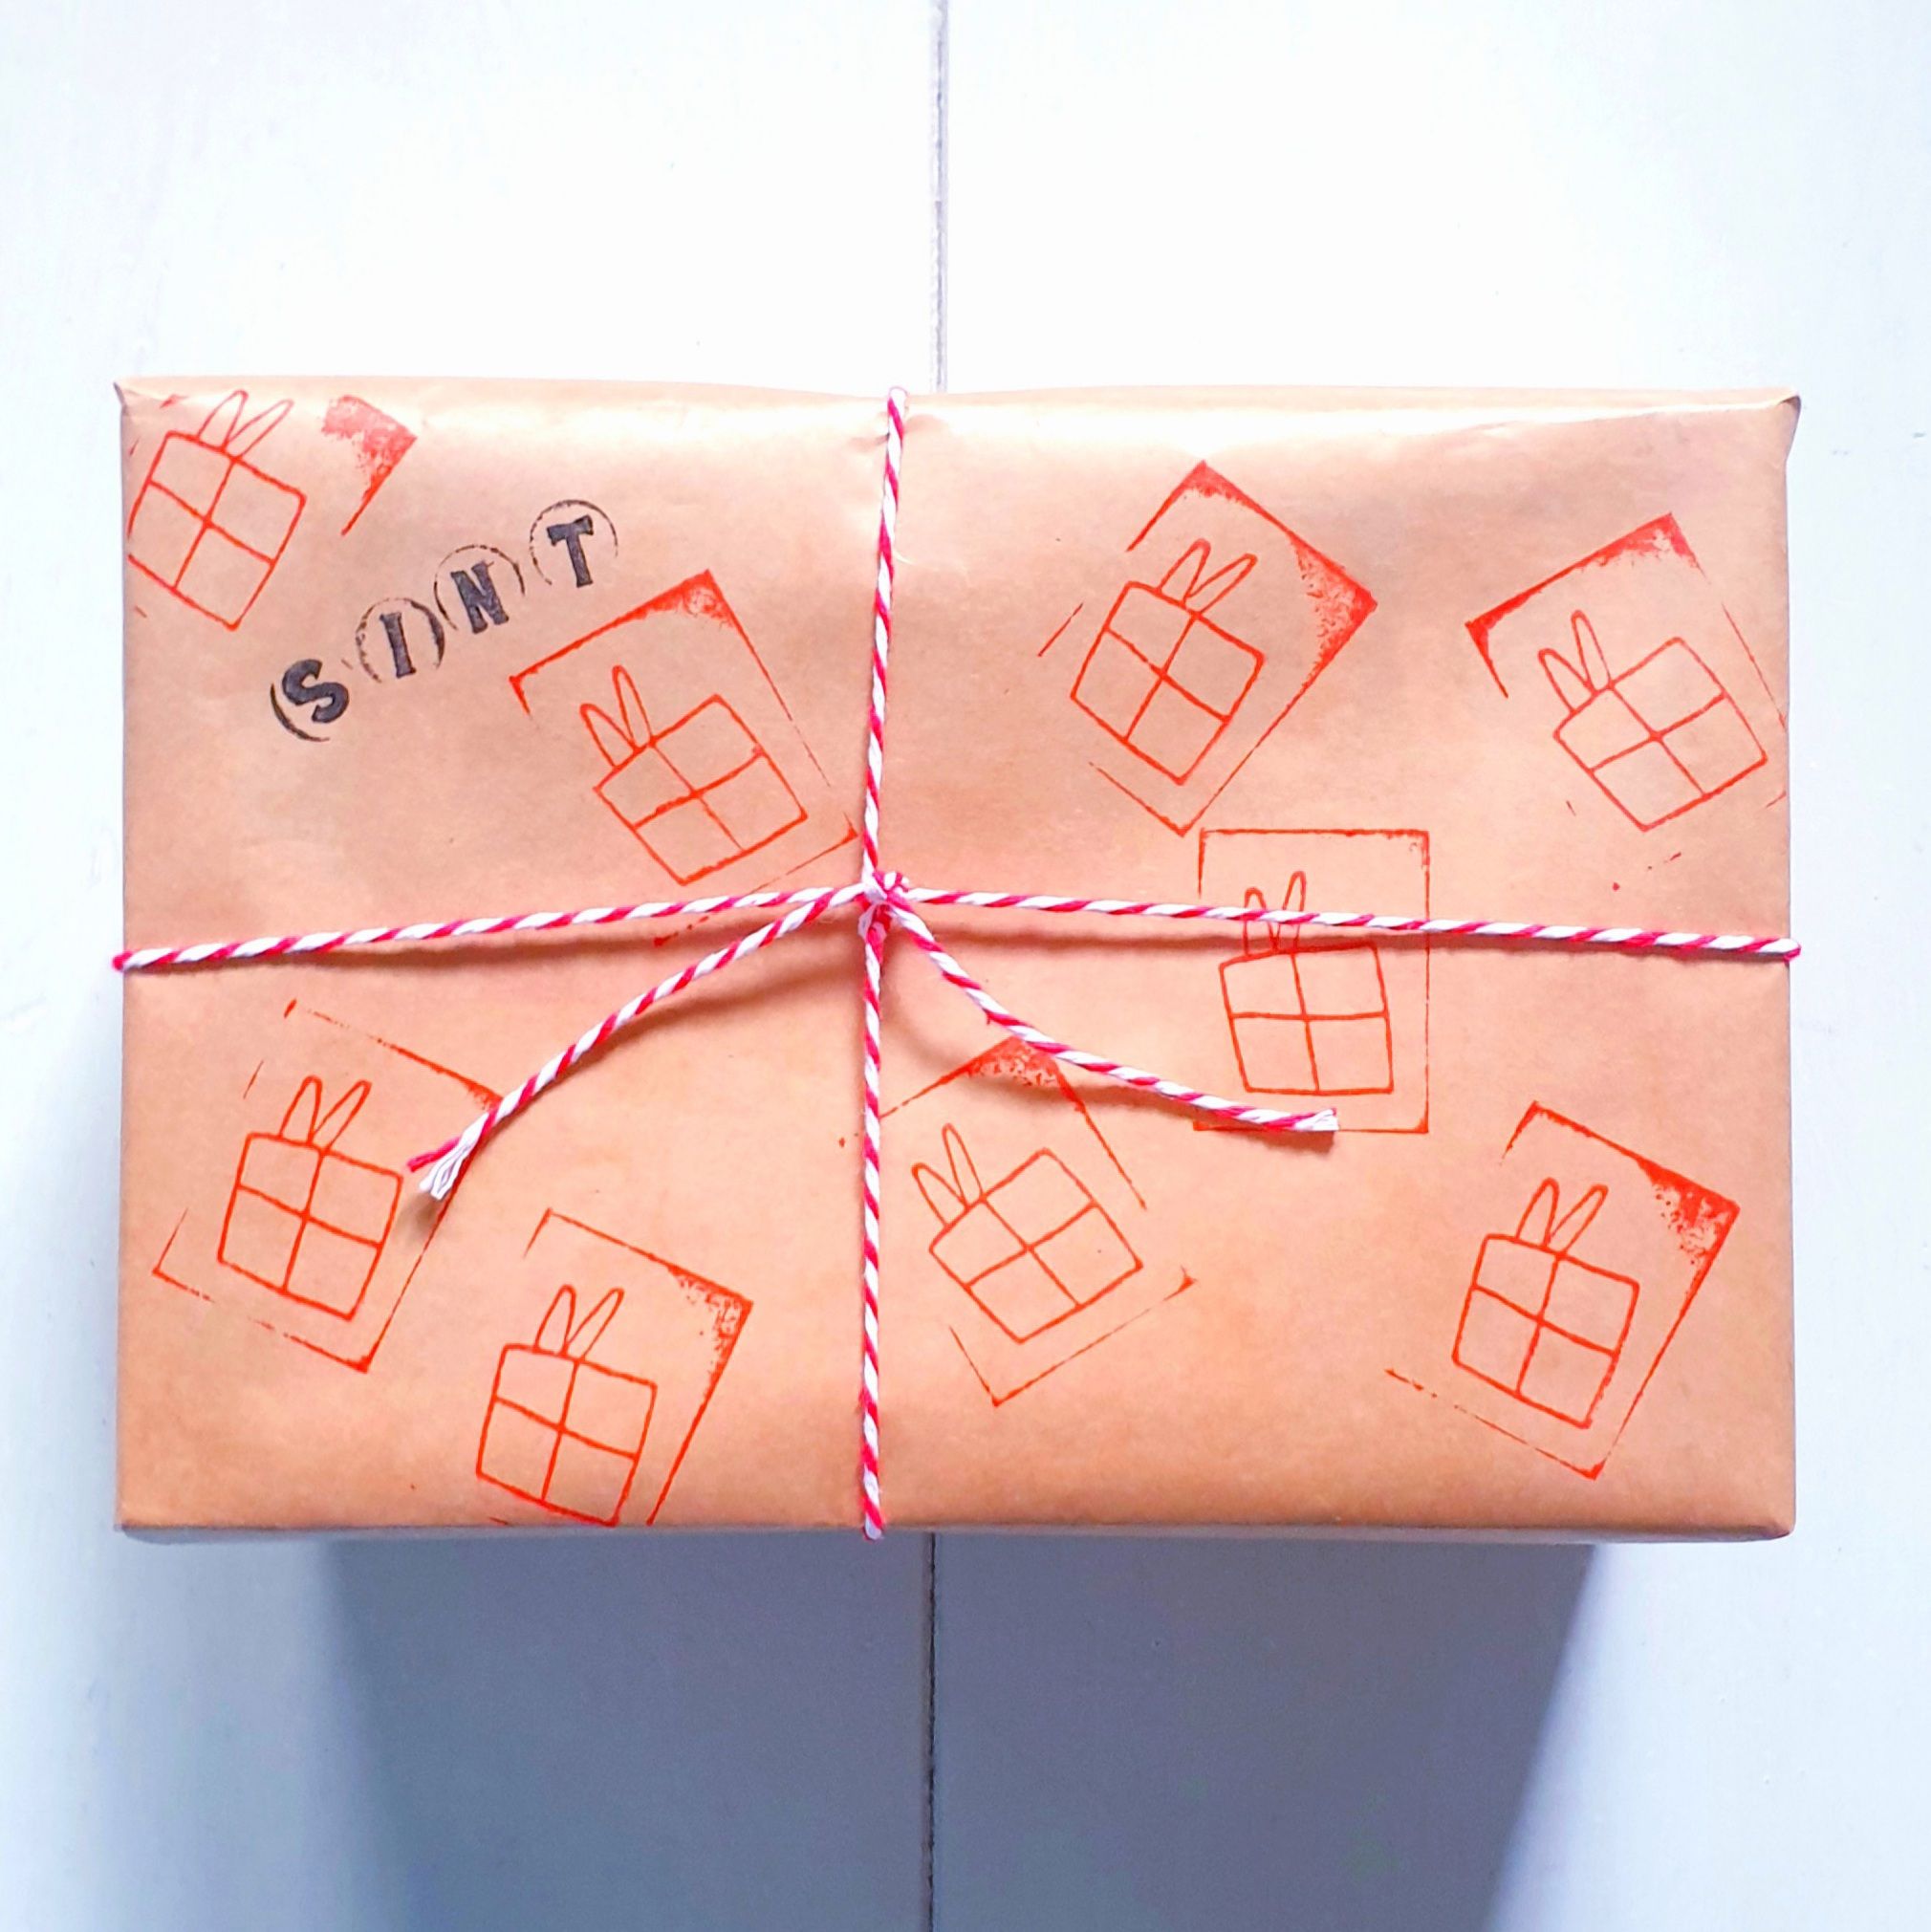 Sinterklaascadeaus inpakken, pakjes leuk versieren. Heb je geen cadeaupapier in huis? Dan kun je van dat stevige bruine inpakpapier gebruiken. Hiermee kun je cadeaupapier stempelen, DIY Sinterklaascadeaupapier. 